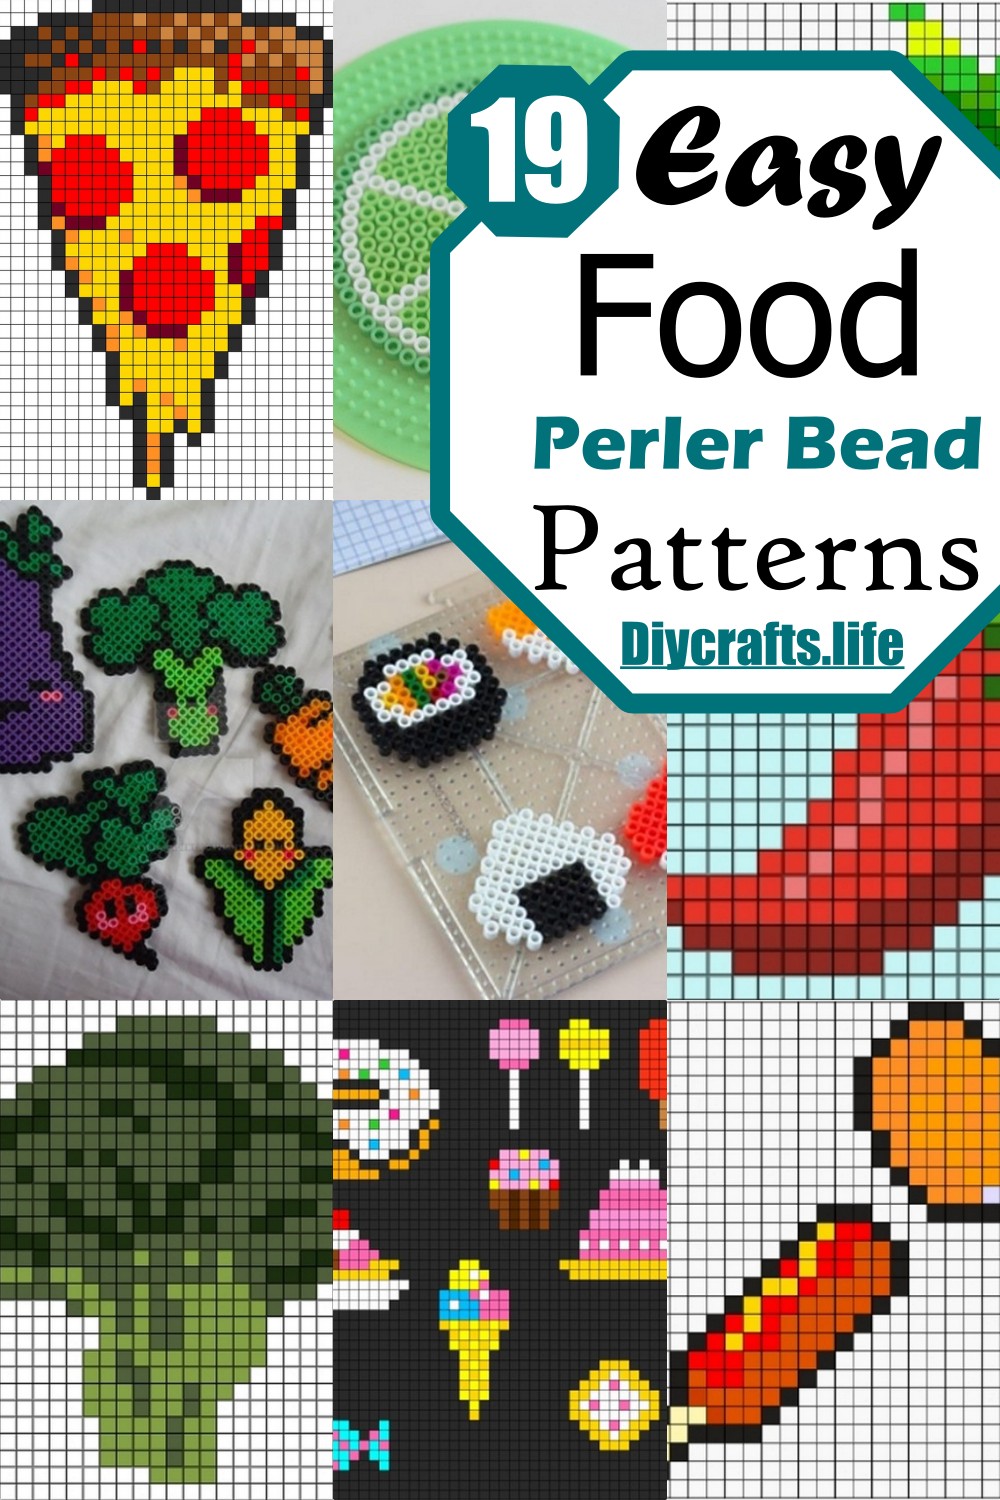 Easy Food Perler Bead Patterns